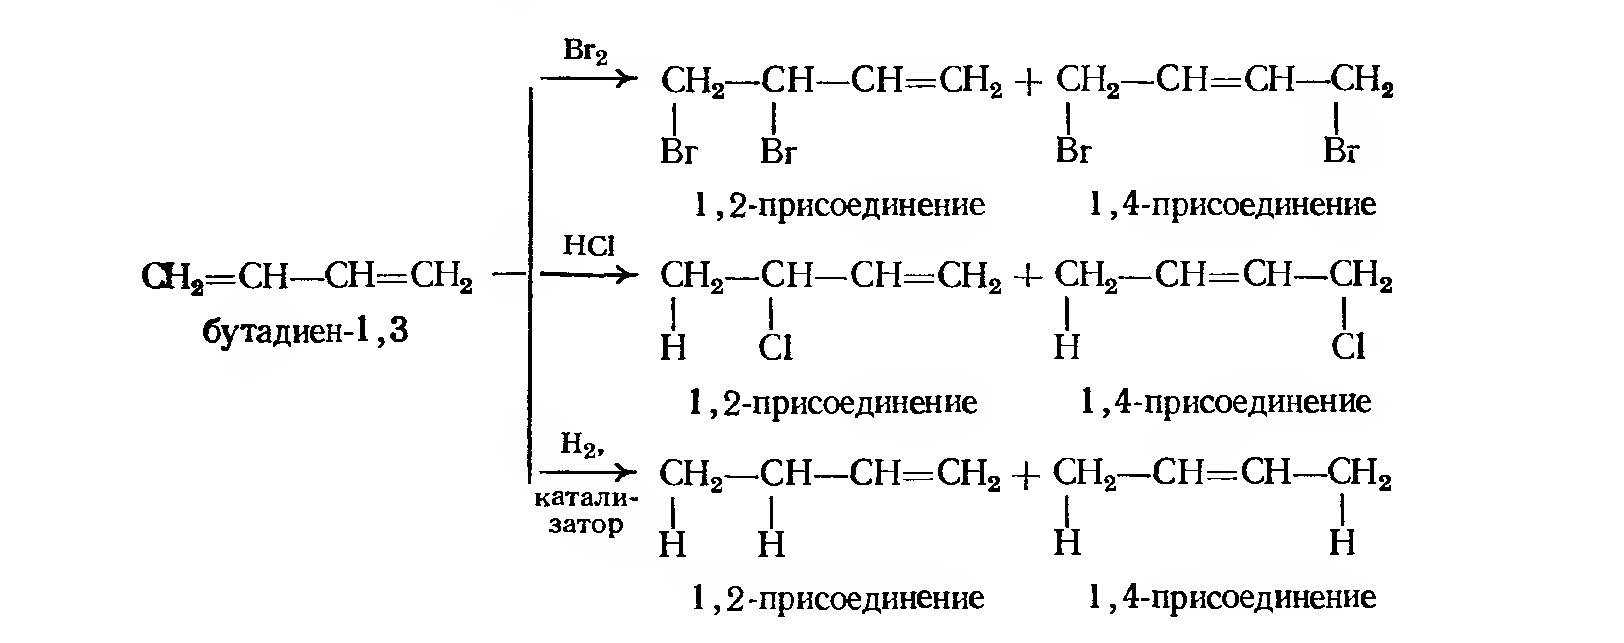 Бутадиен 1 3 полимеризация реакция. Схема полимеризации хлоропрена. Присоединение hbr к бутадиену 1,3. Гидробромирование бутадиена-1.3. Бутадиен 13 и бромоводород.